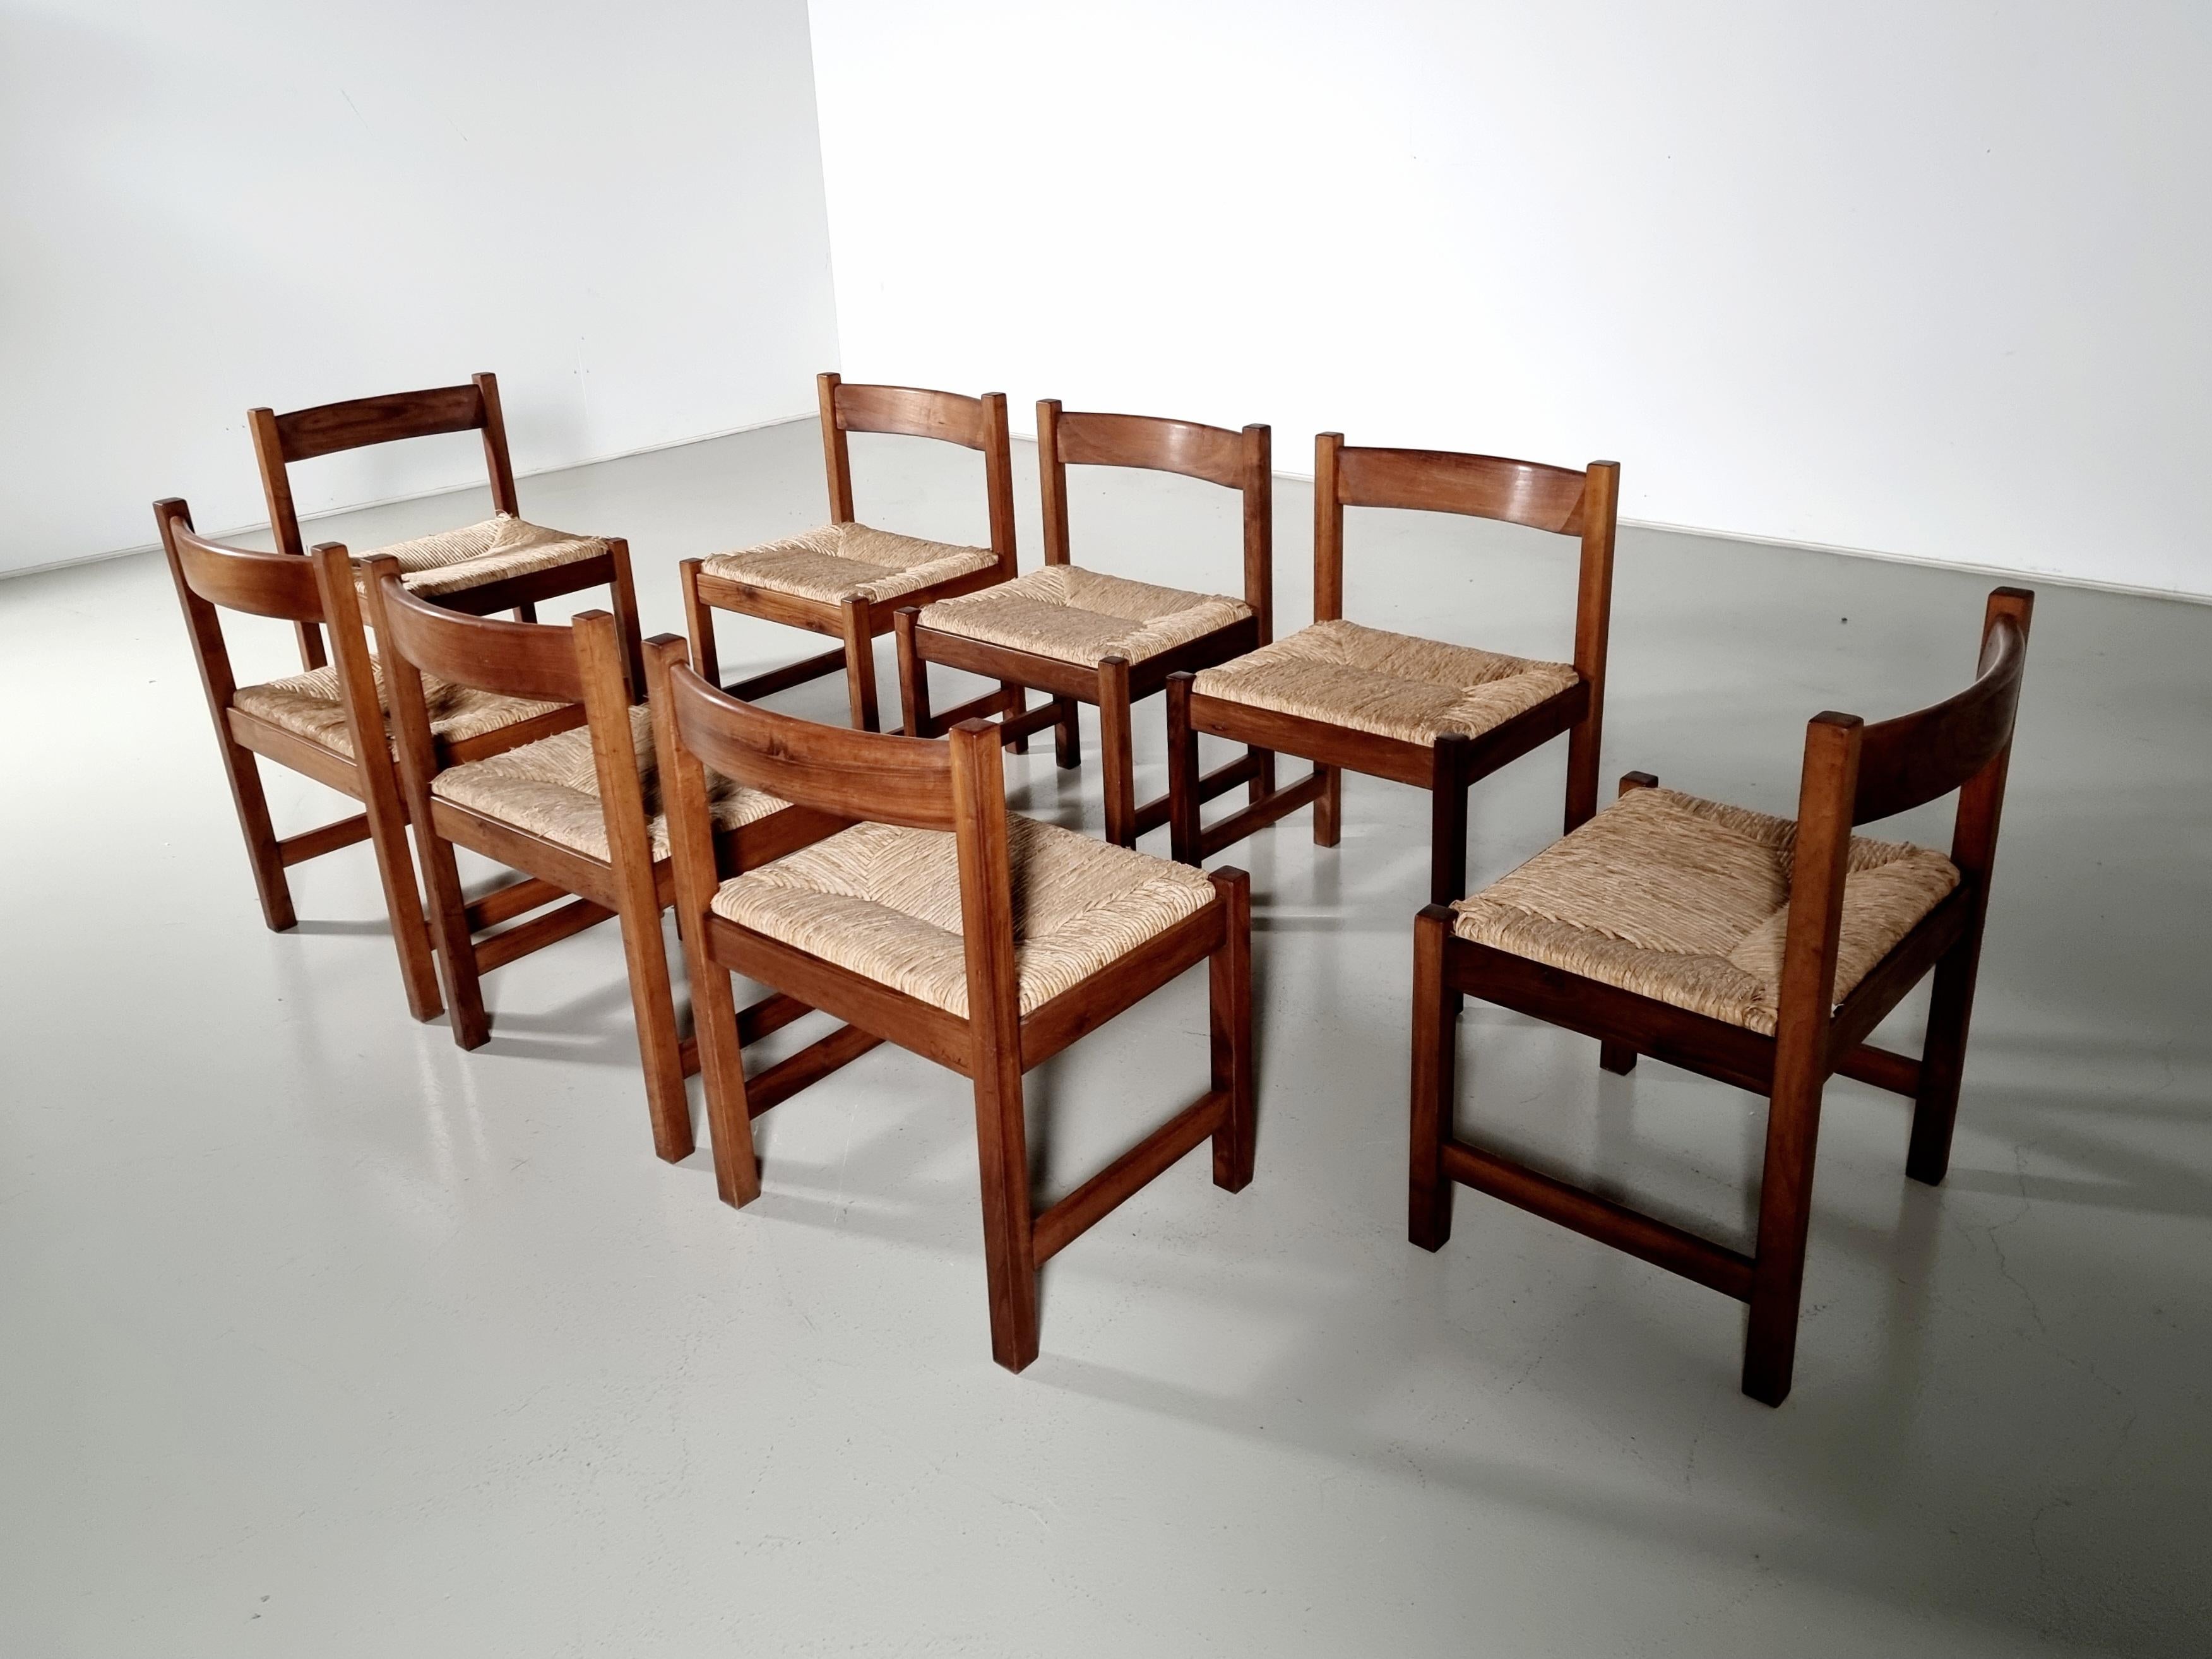 Torbecchia Chairs in walnut and rush, Giovanni Michelucci for Poltronova, 1960s For Sale 1